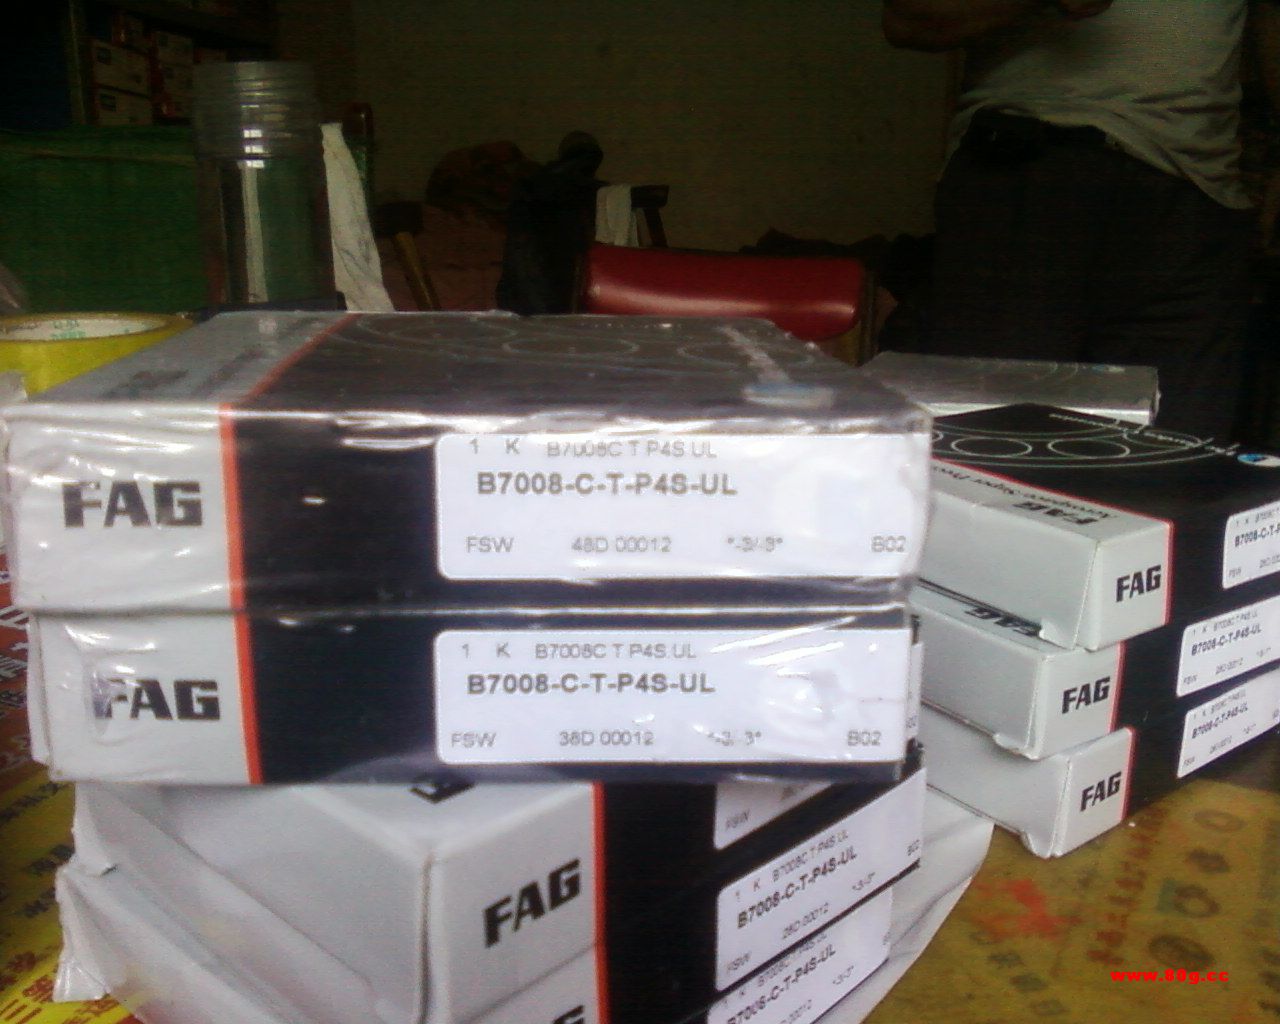 FAG滑动轴承 供应fag原厂全系列产品SKF斯凯孚轴承 SKF斯凯孚轴承FAG滑动轴承 FAG滑动